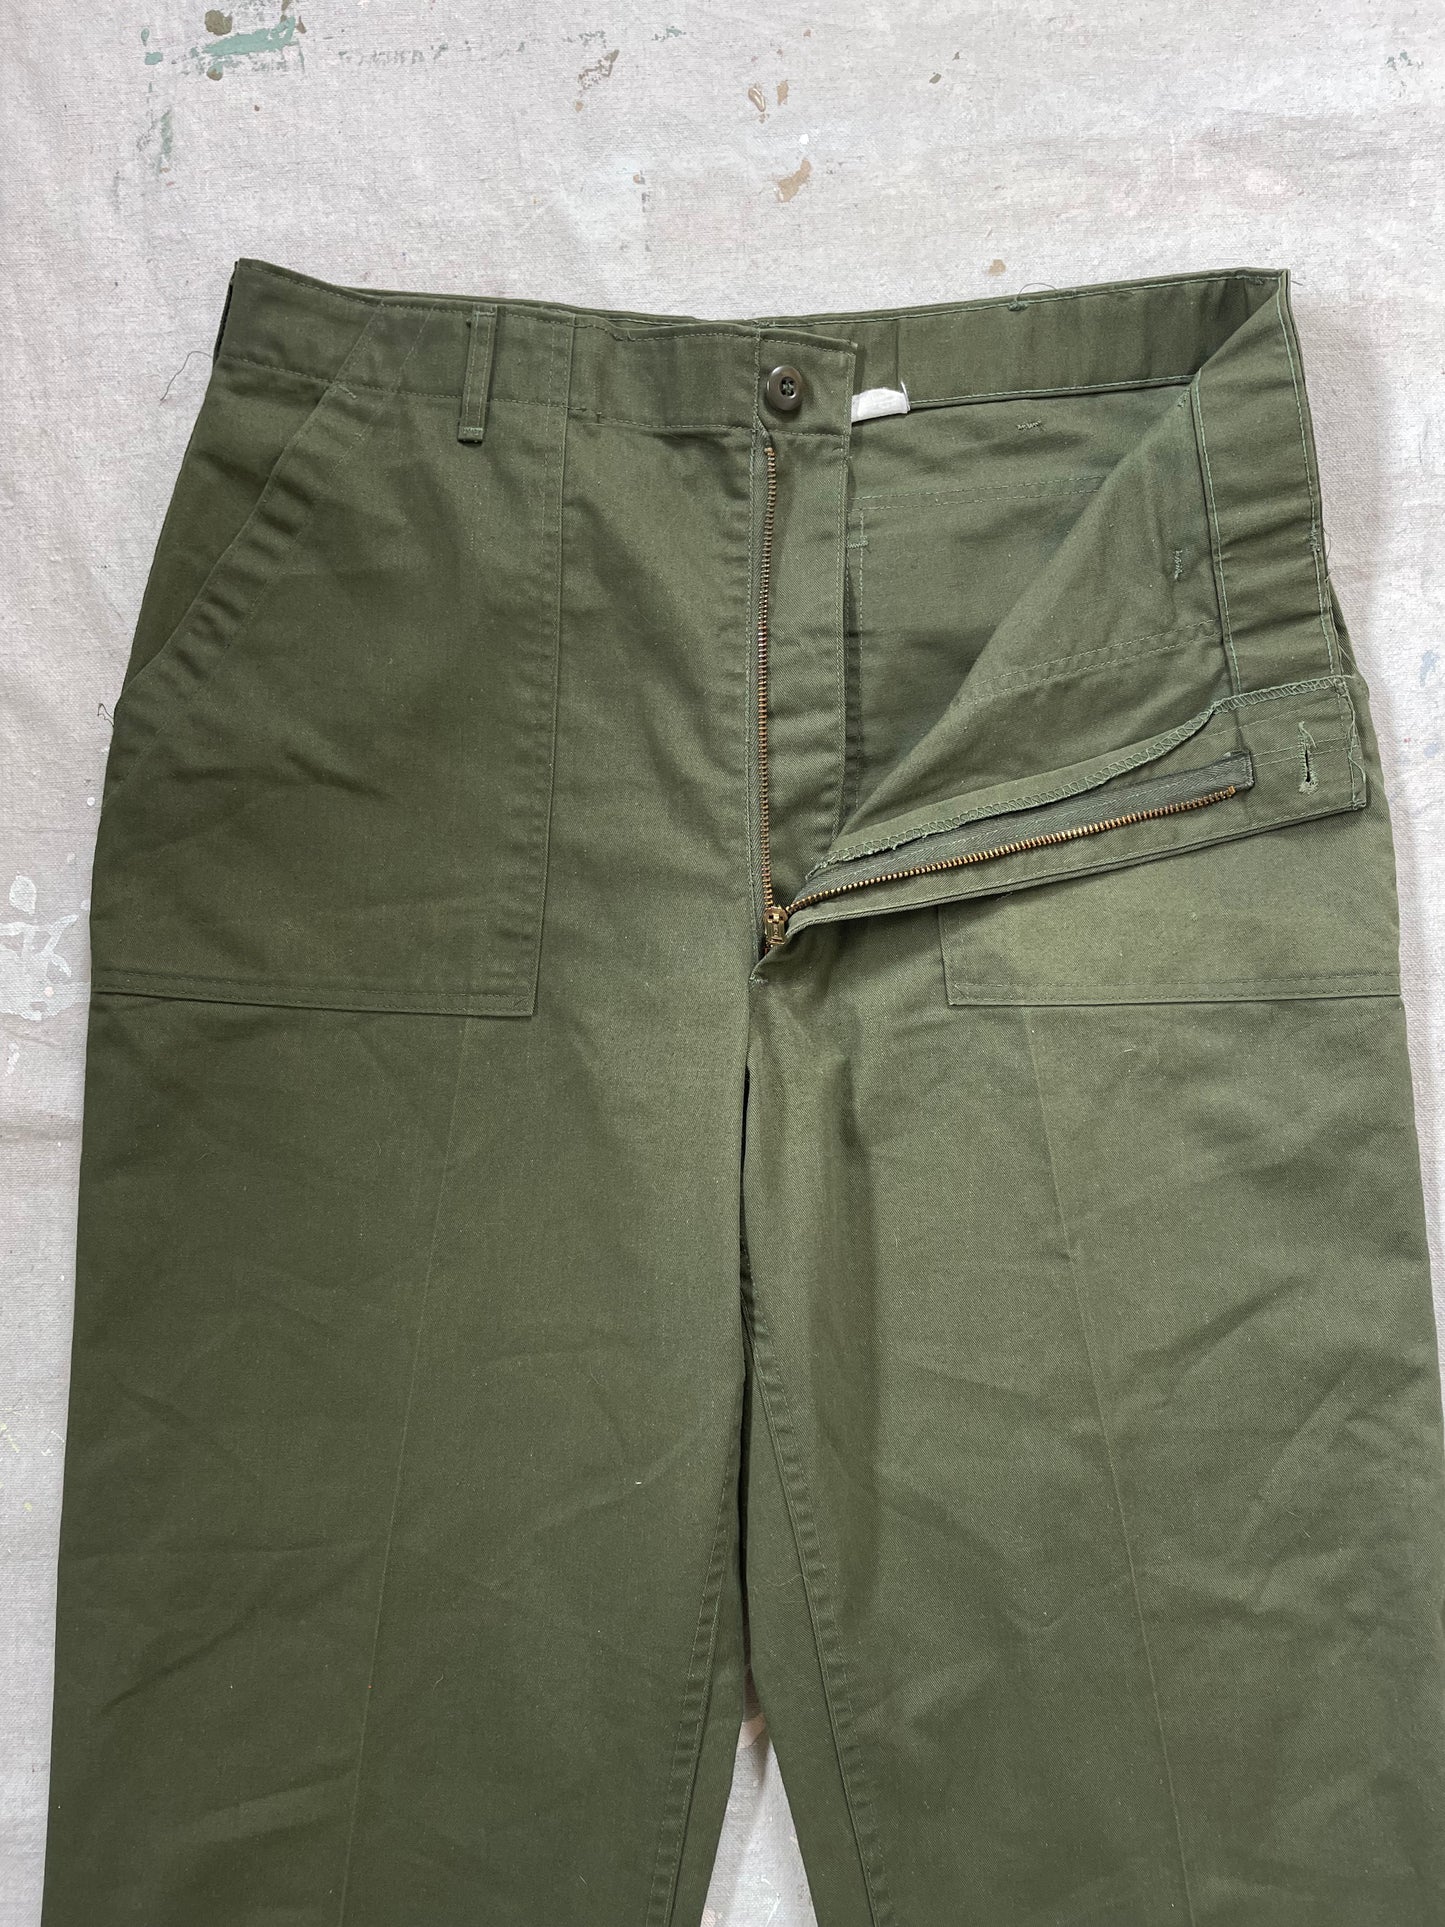 80s OG-507 Army Pants